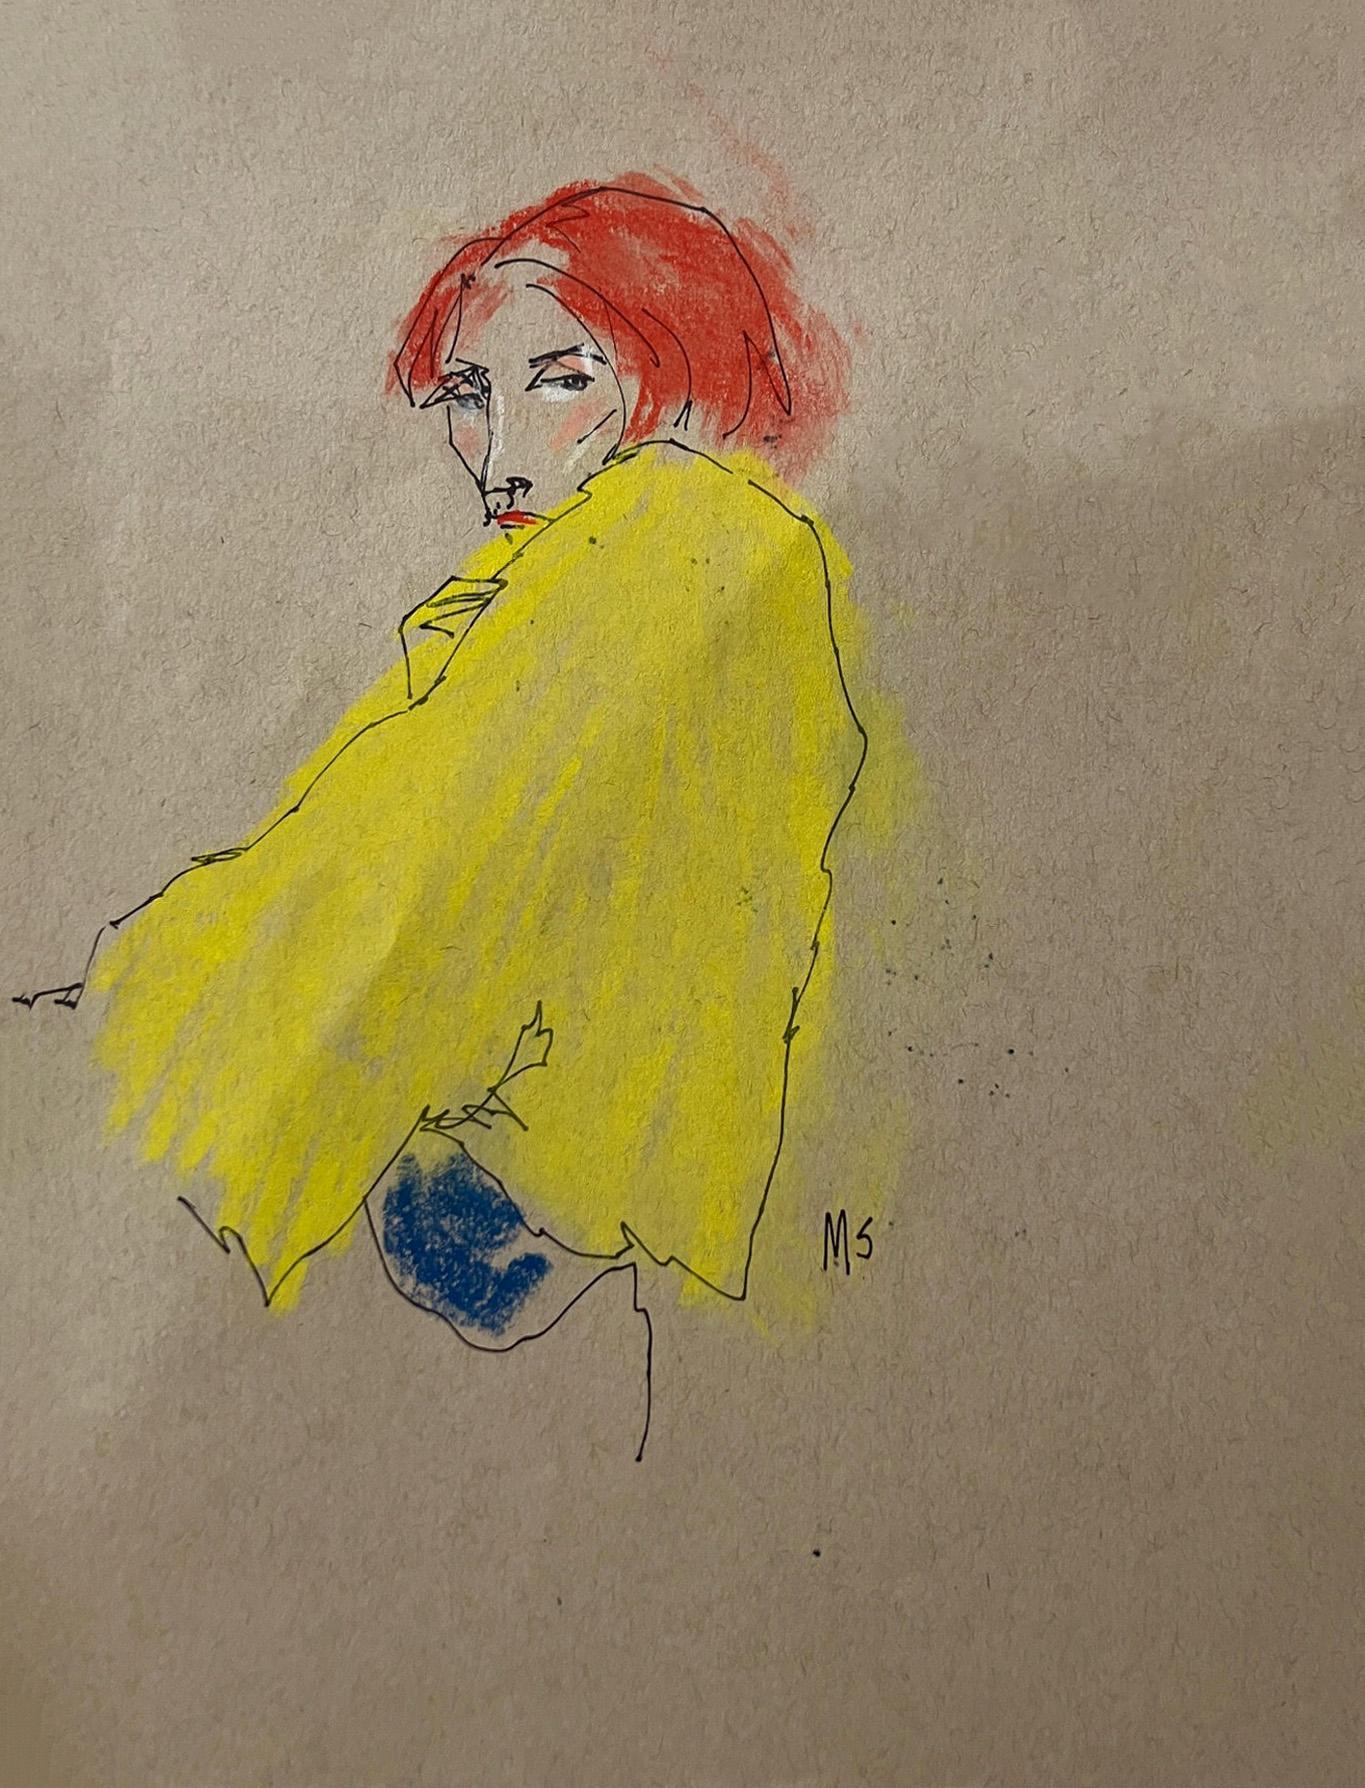 Manuel Santelices Figurative Art - The Yellow Jacket, Portrait Painting 